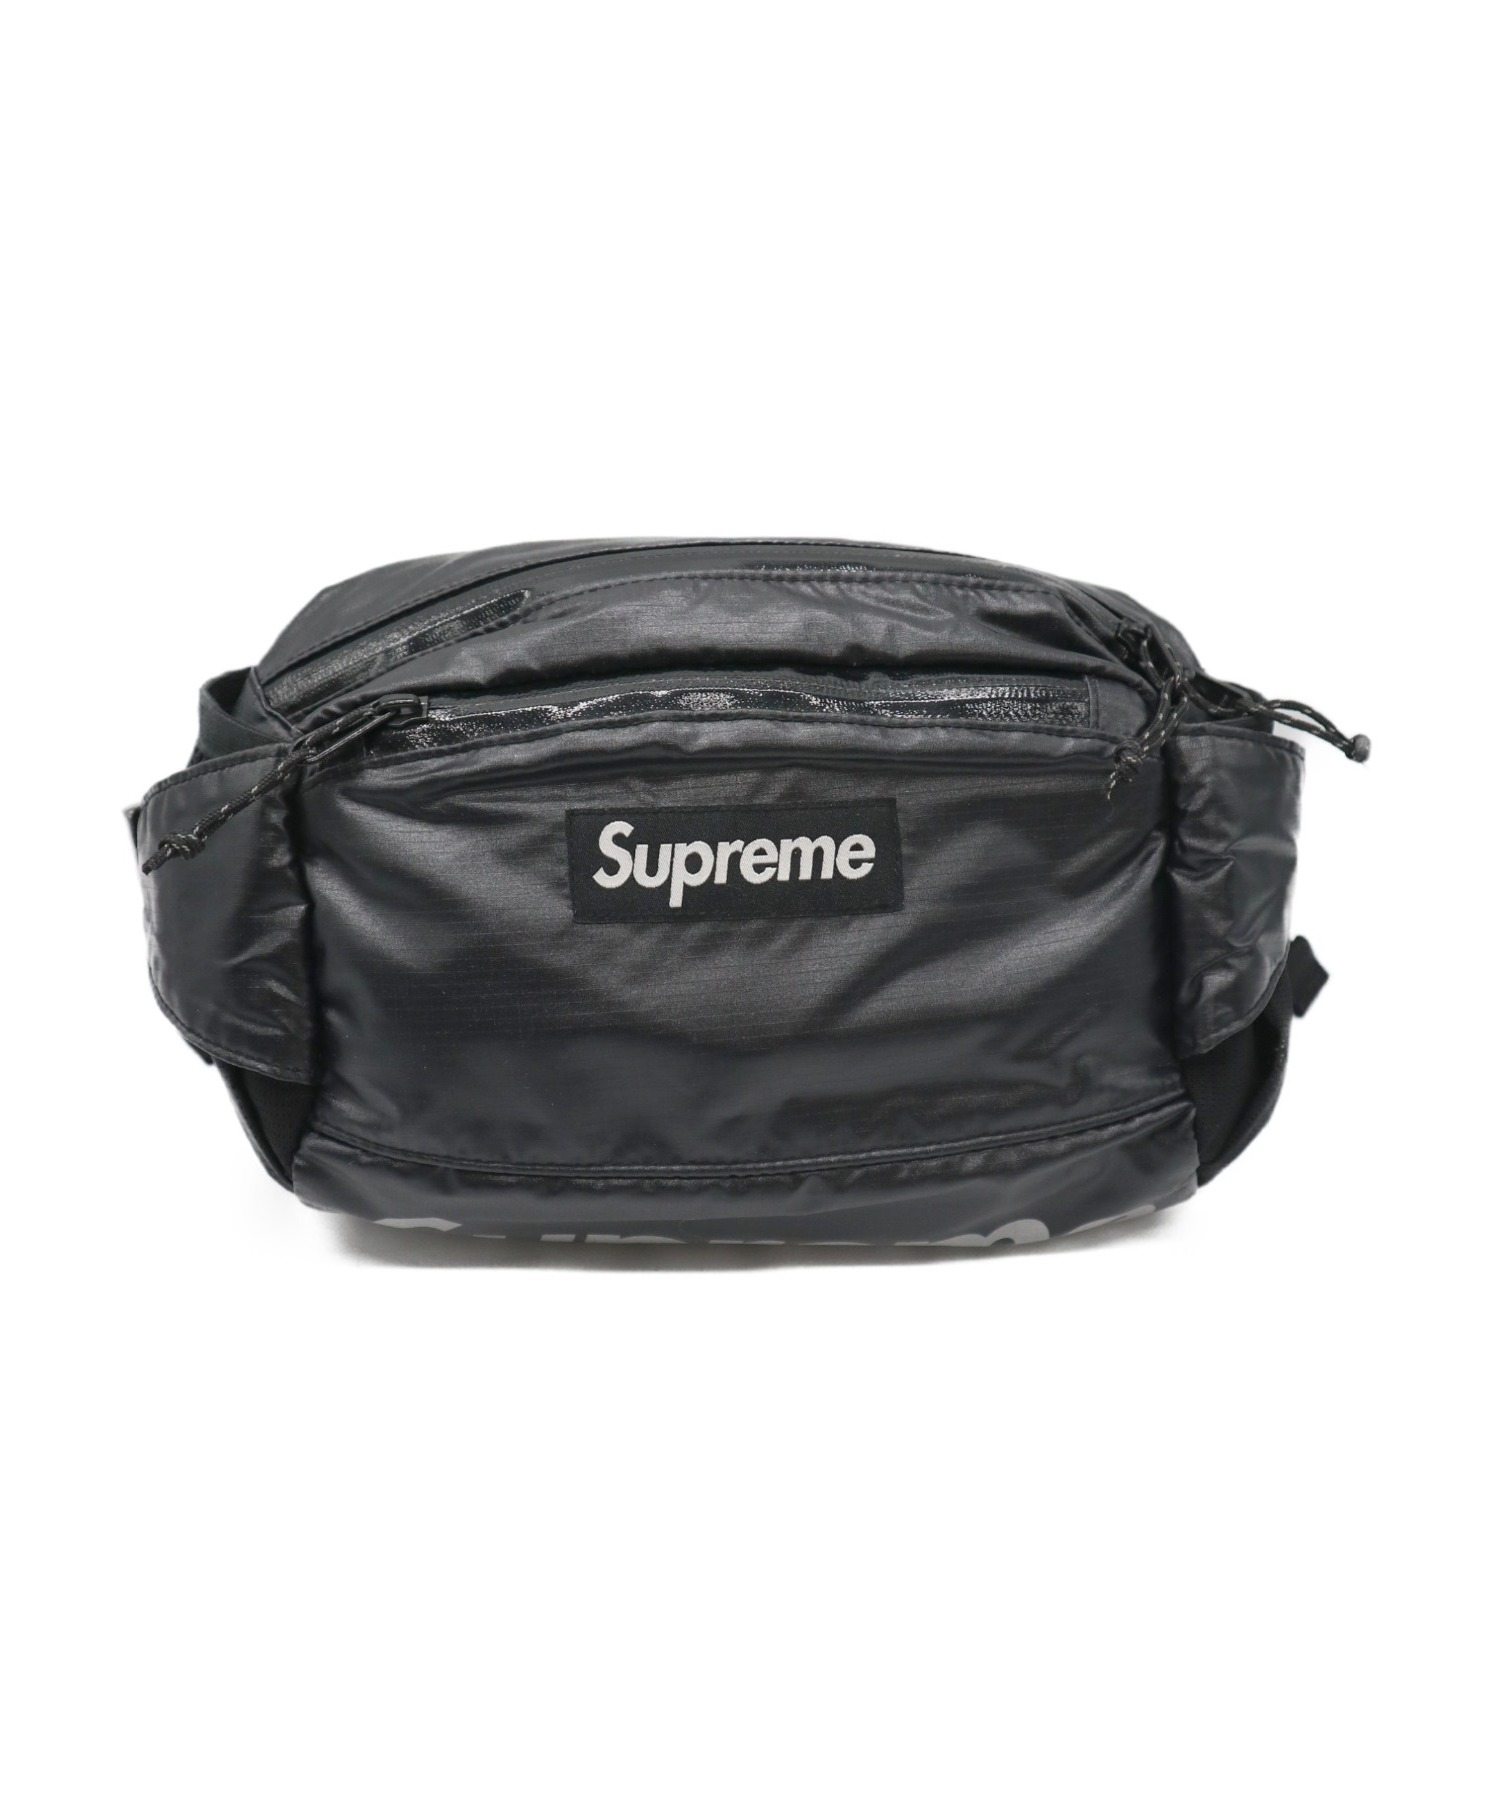 supreme 17aw waist bag black www.krzysztofbialy.com